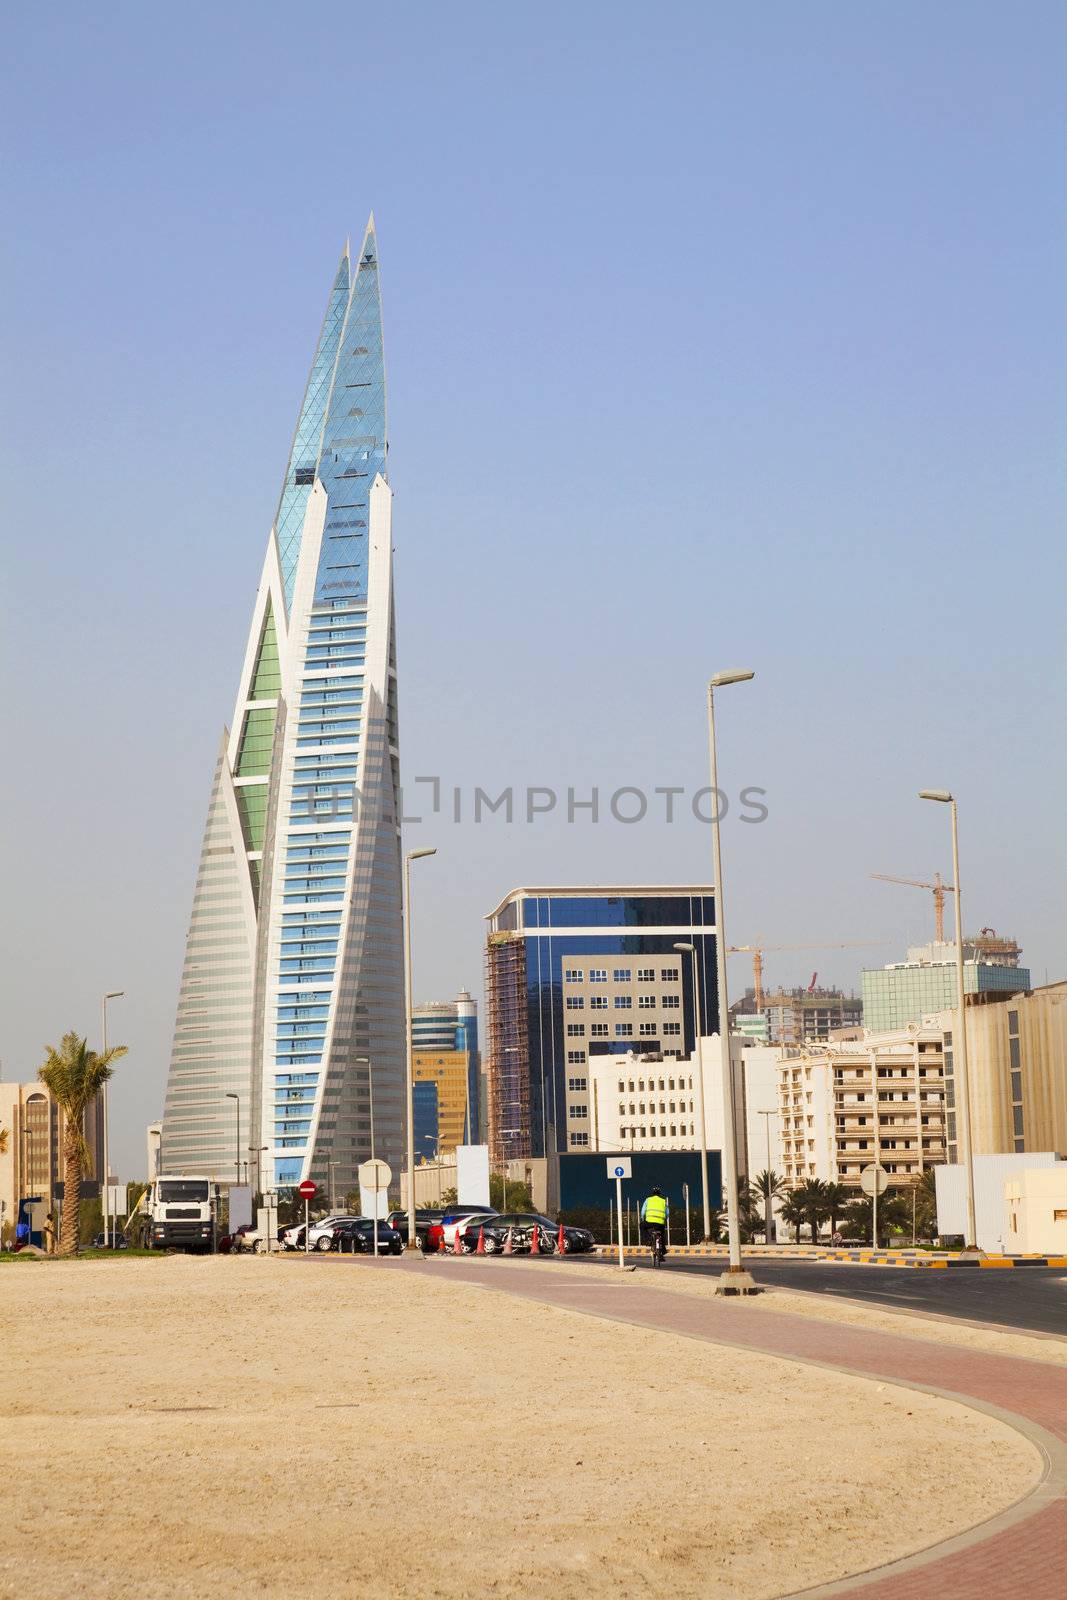 Manama, Bahrain by shariffc